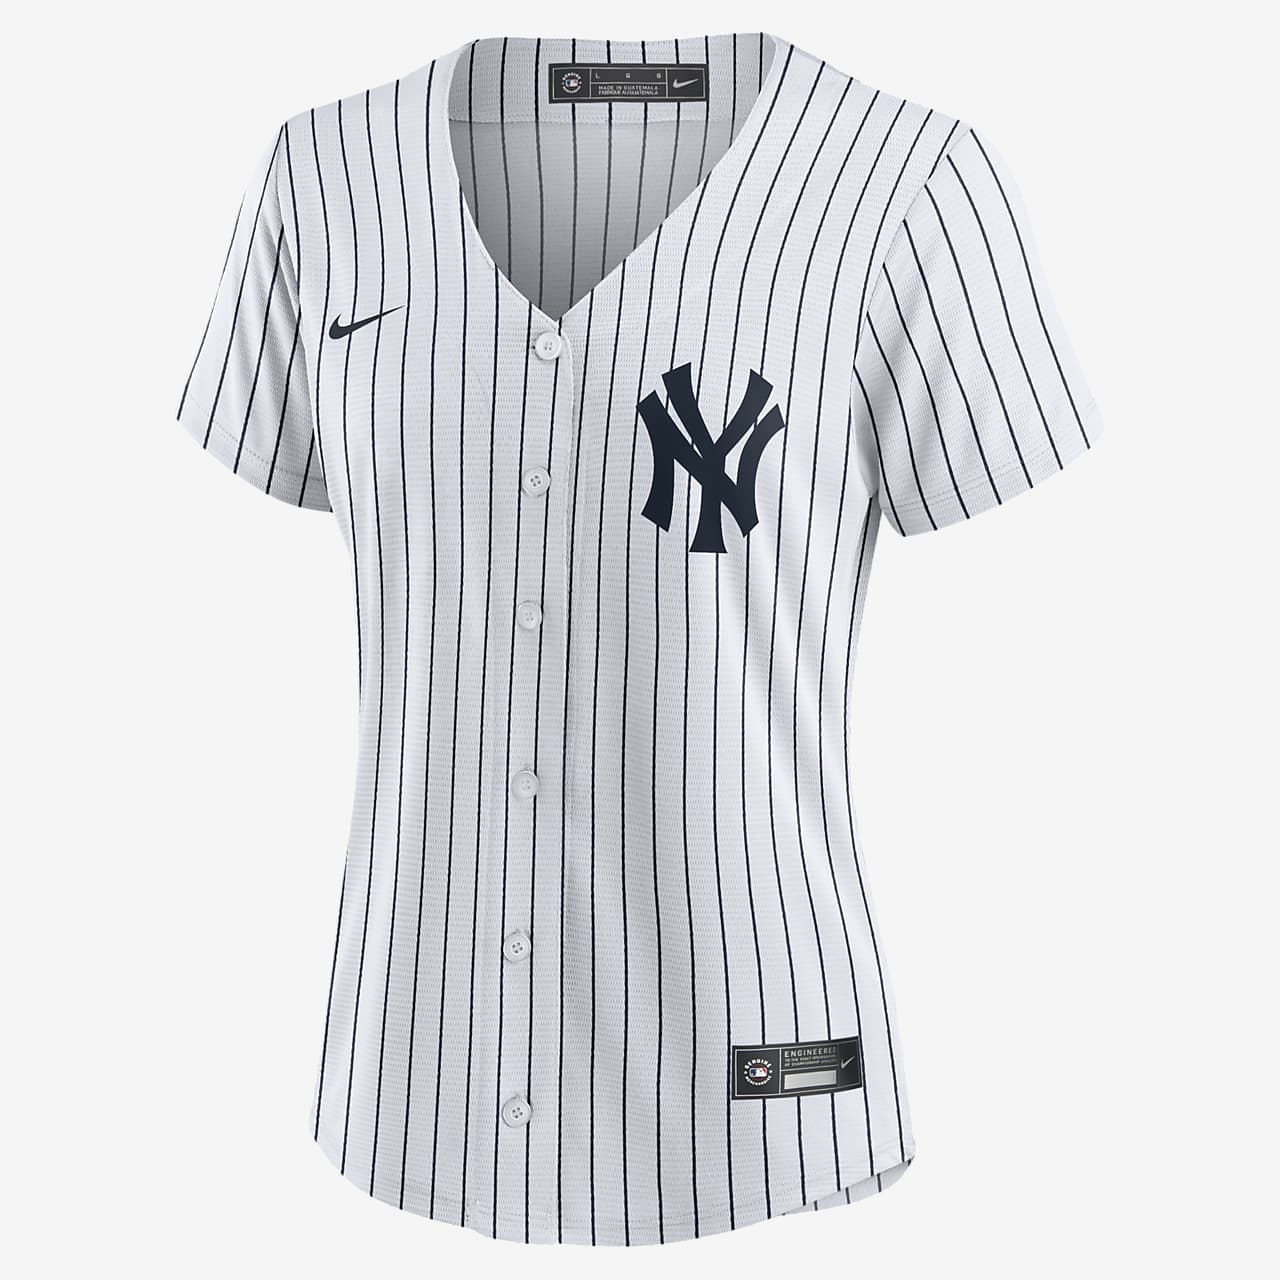 new york yankees womens shirt